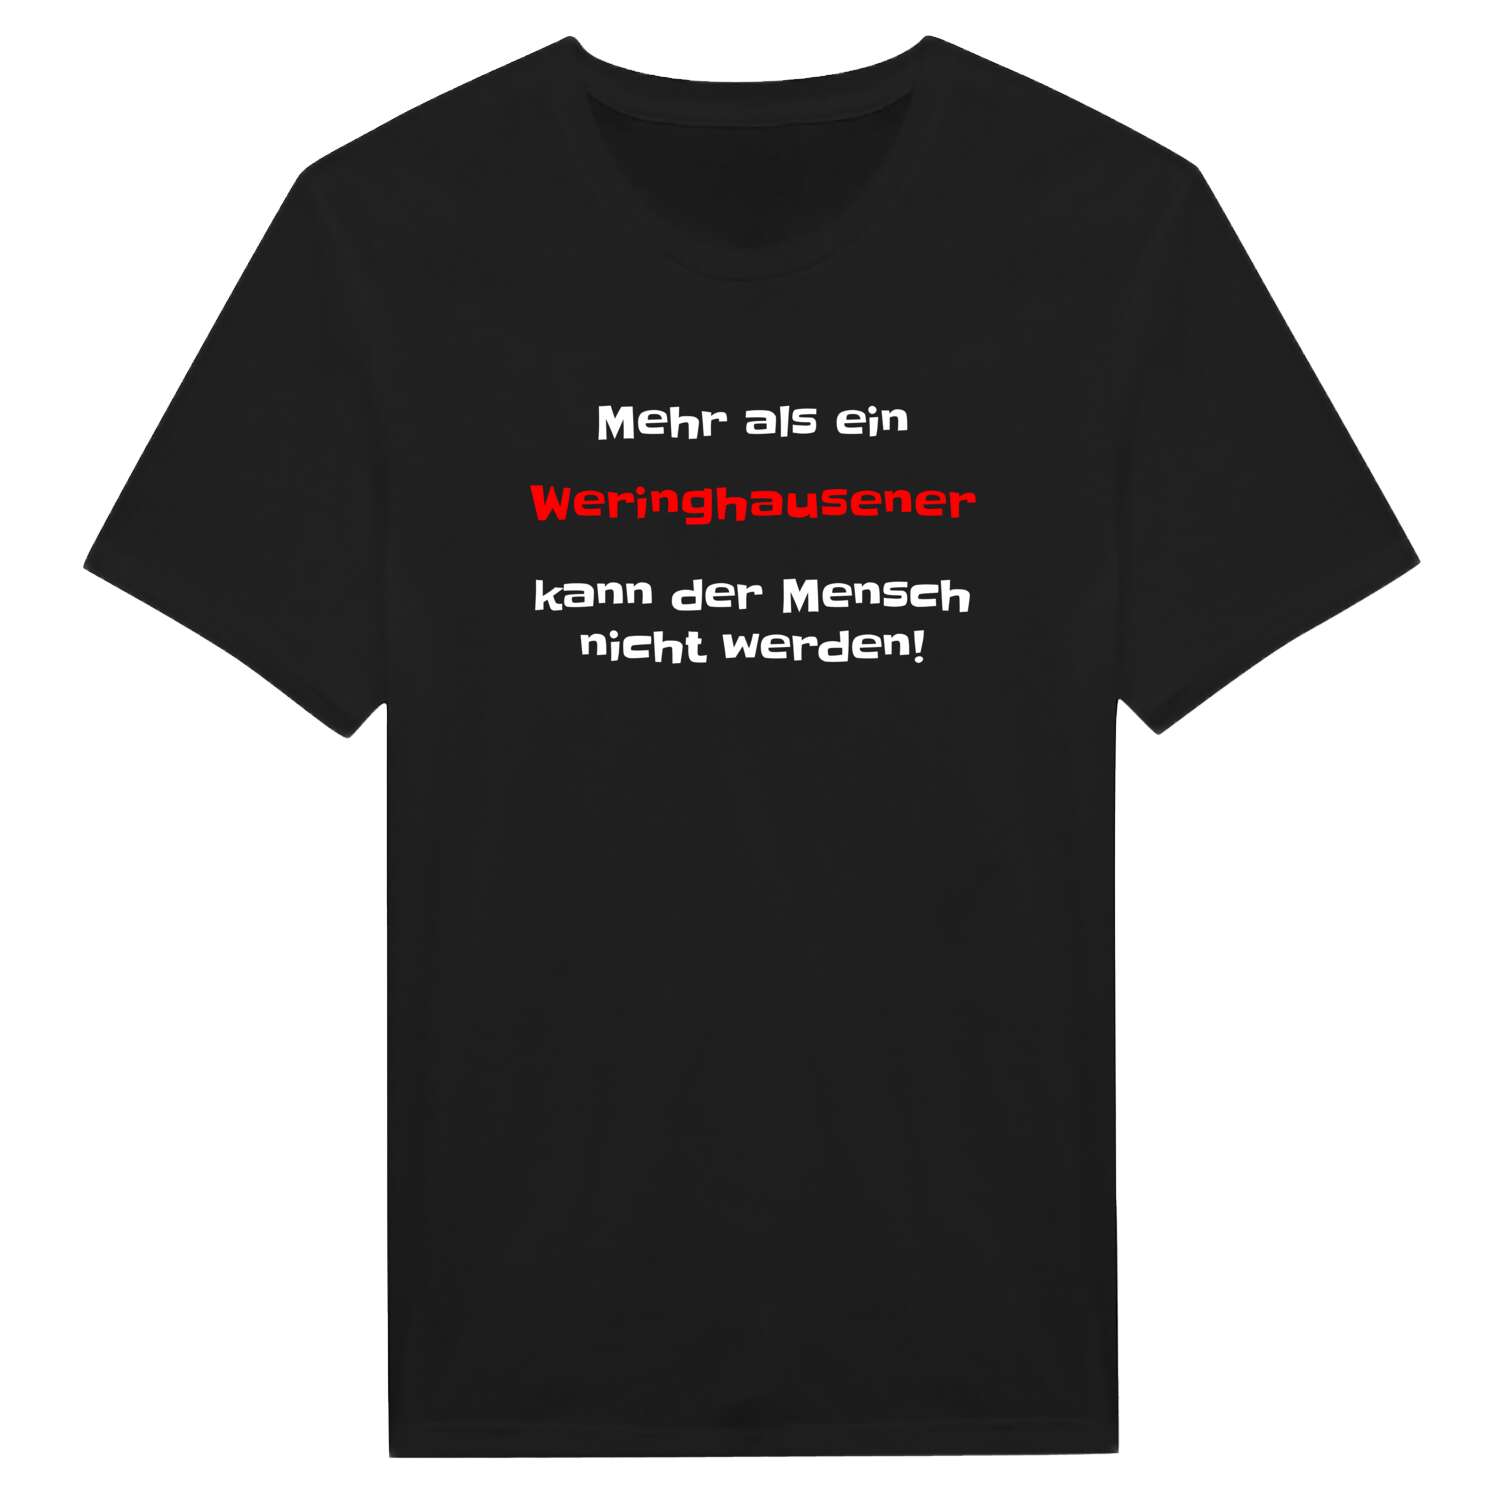 Weringhausen T-Shirt »Mehr als ein«